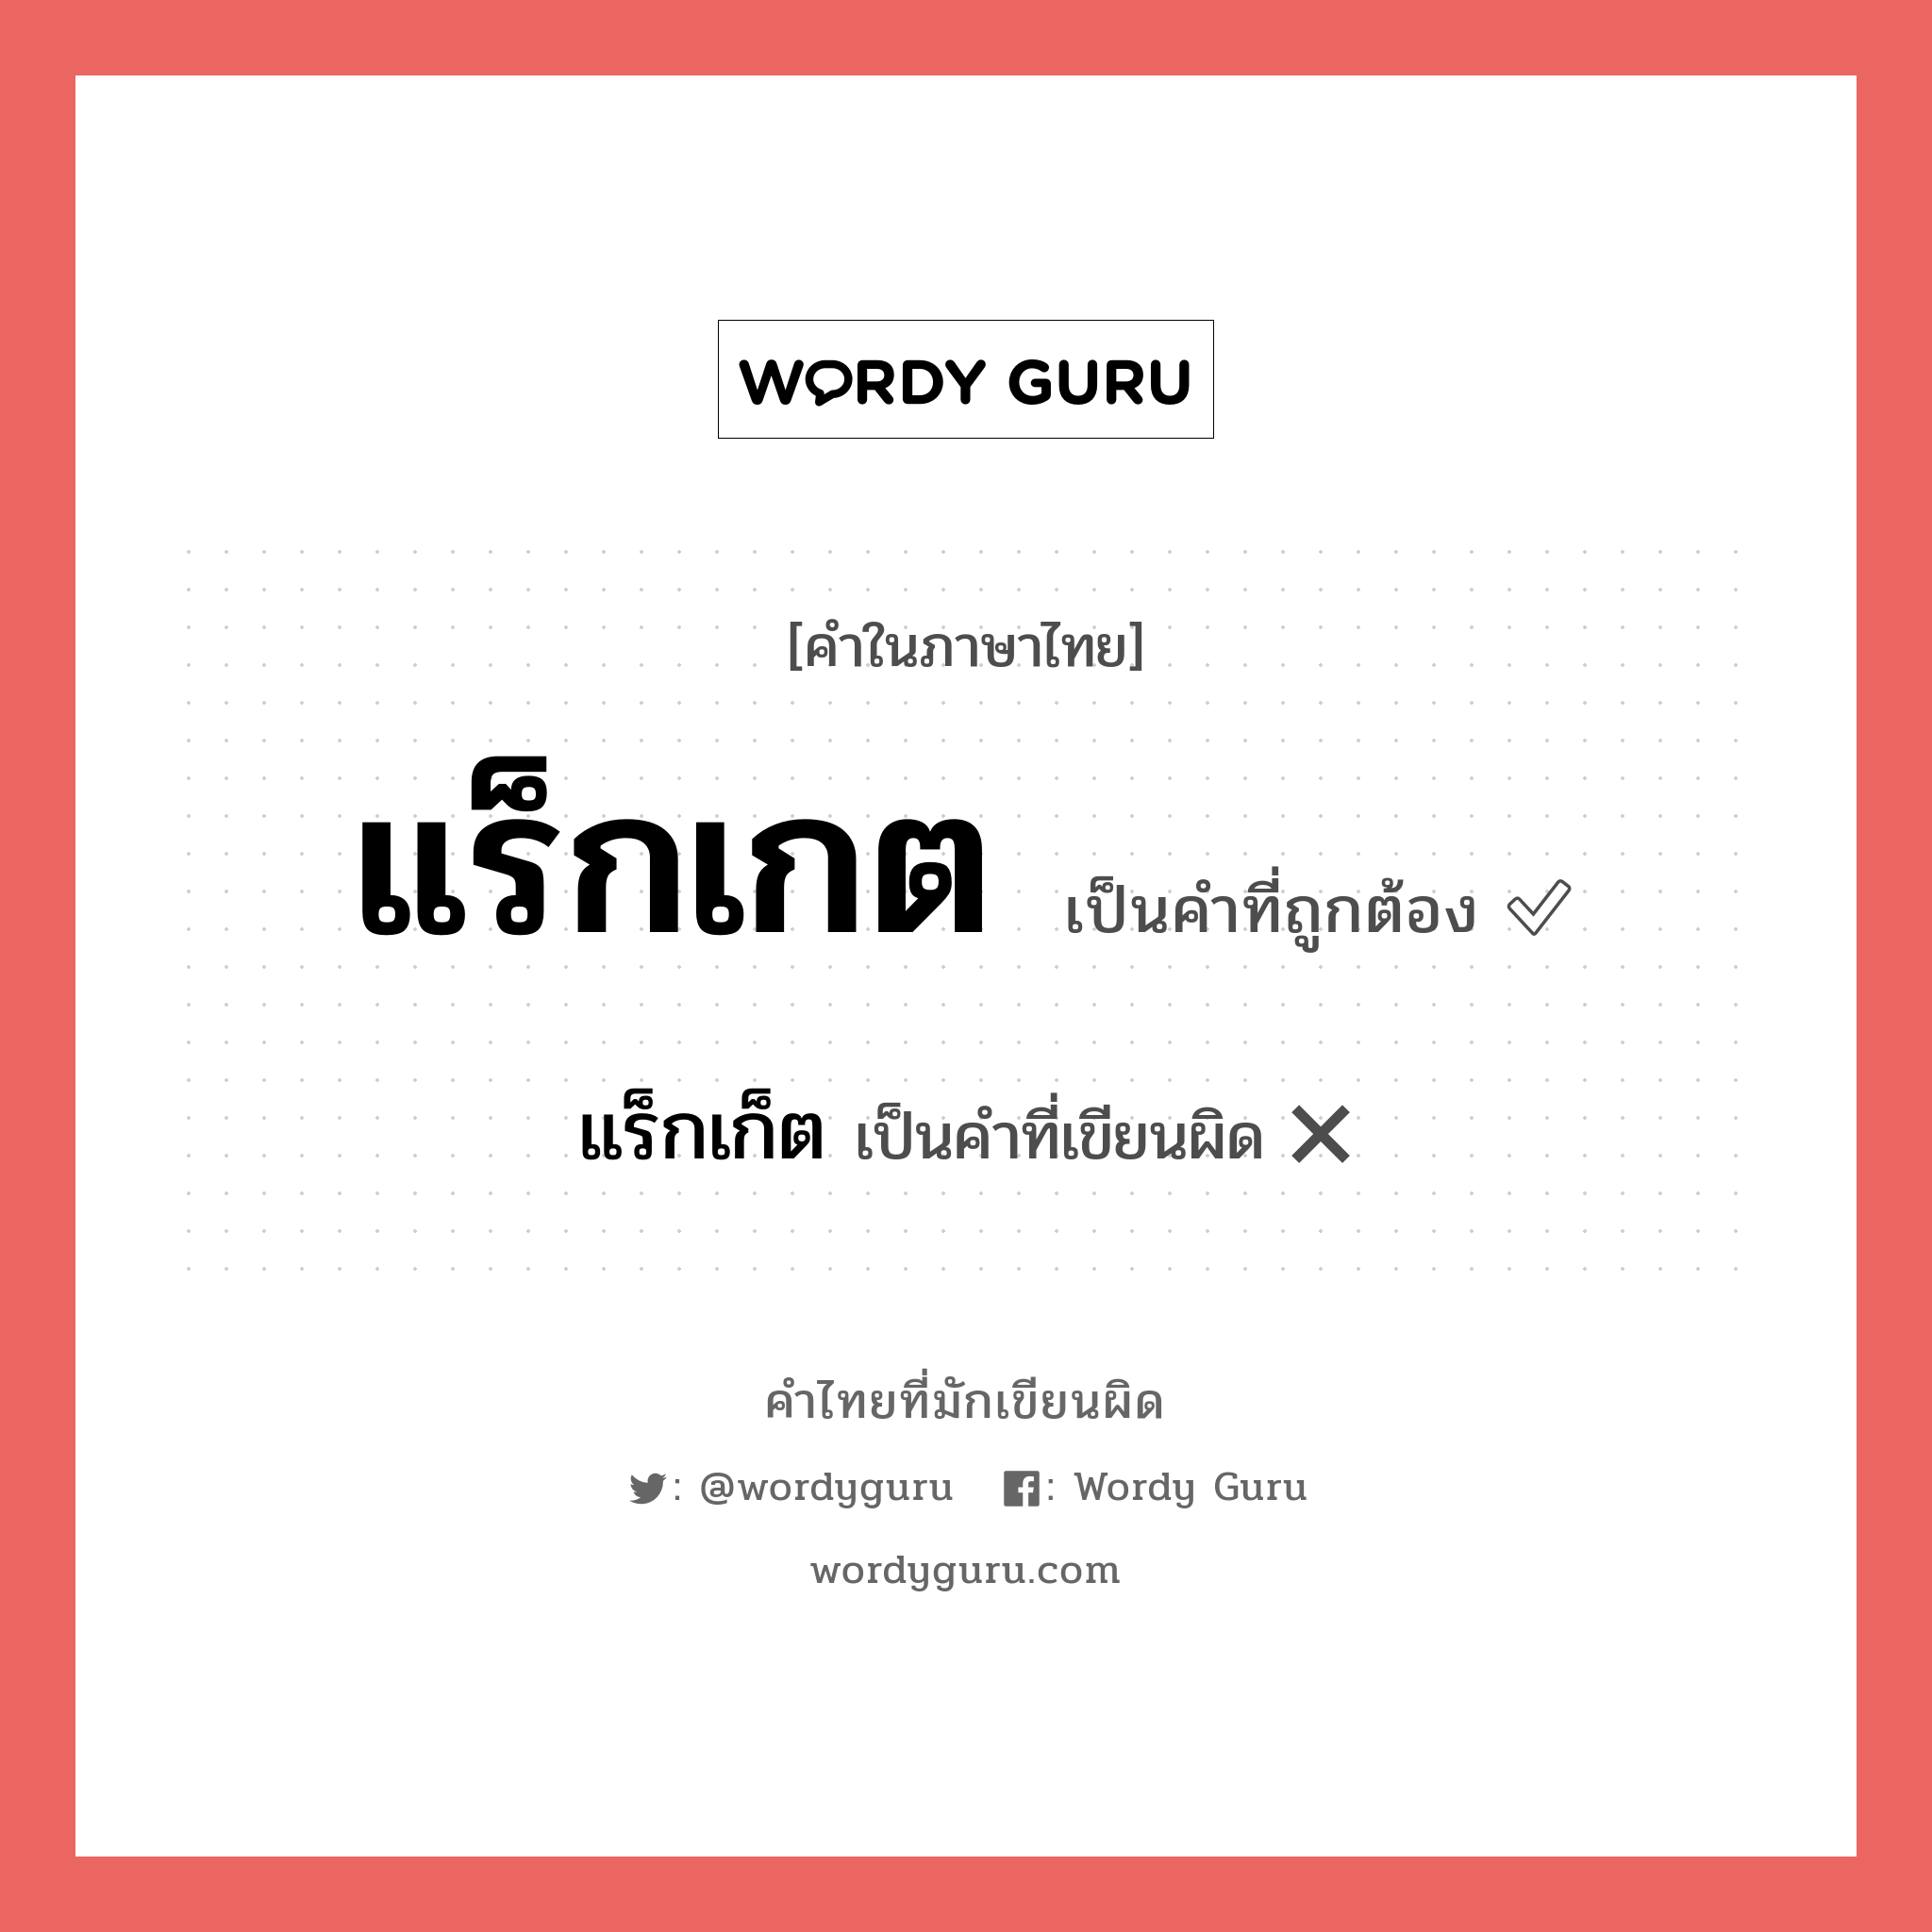 แร็กเกต หรือ แร็กเก็ต คำไหนเขียนถูก?, คำในภาษาไทยที่มักเขียนผิด แร็กเกต คำที่ผิด ❌ แร็กเก็ต